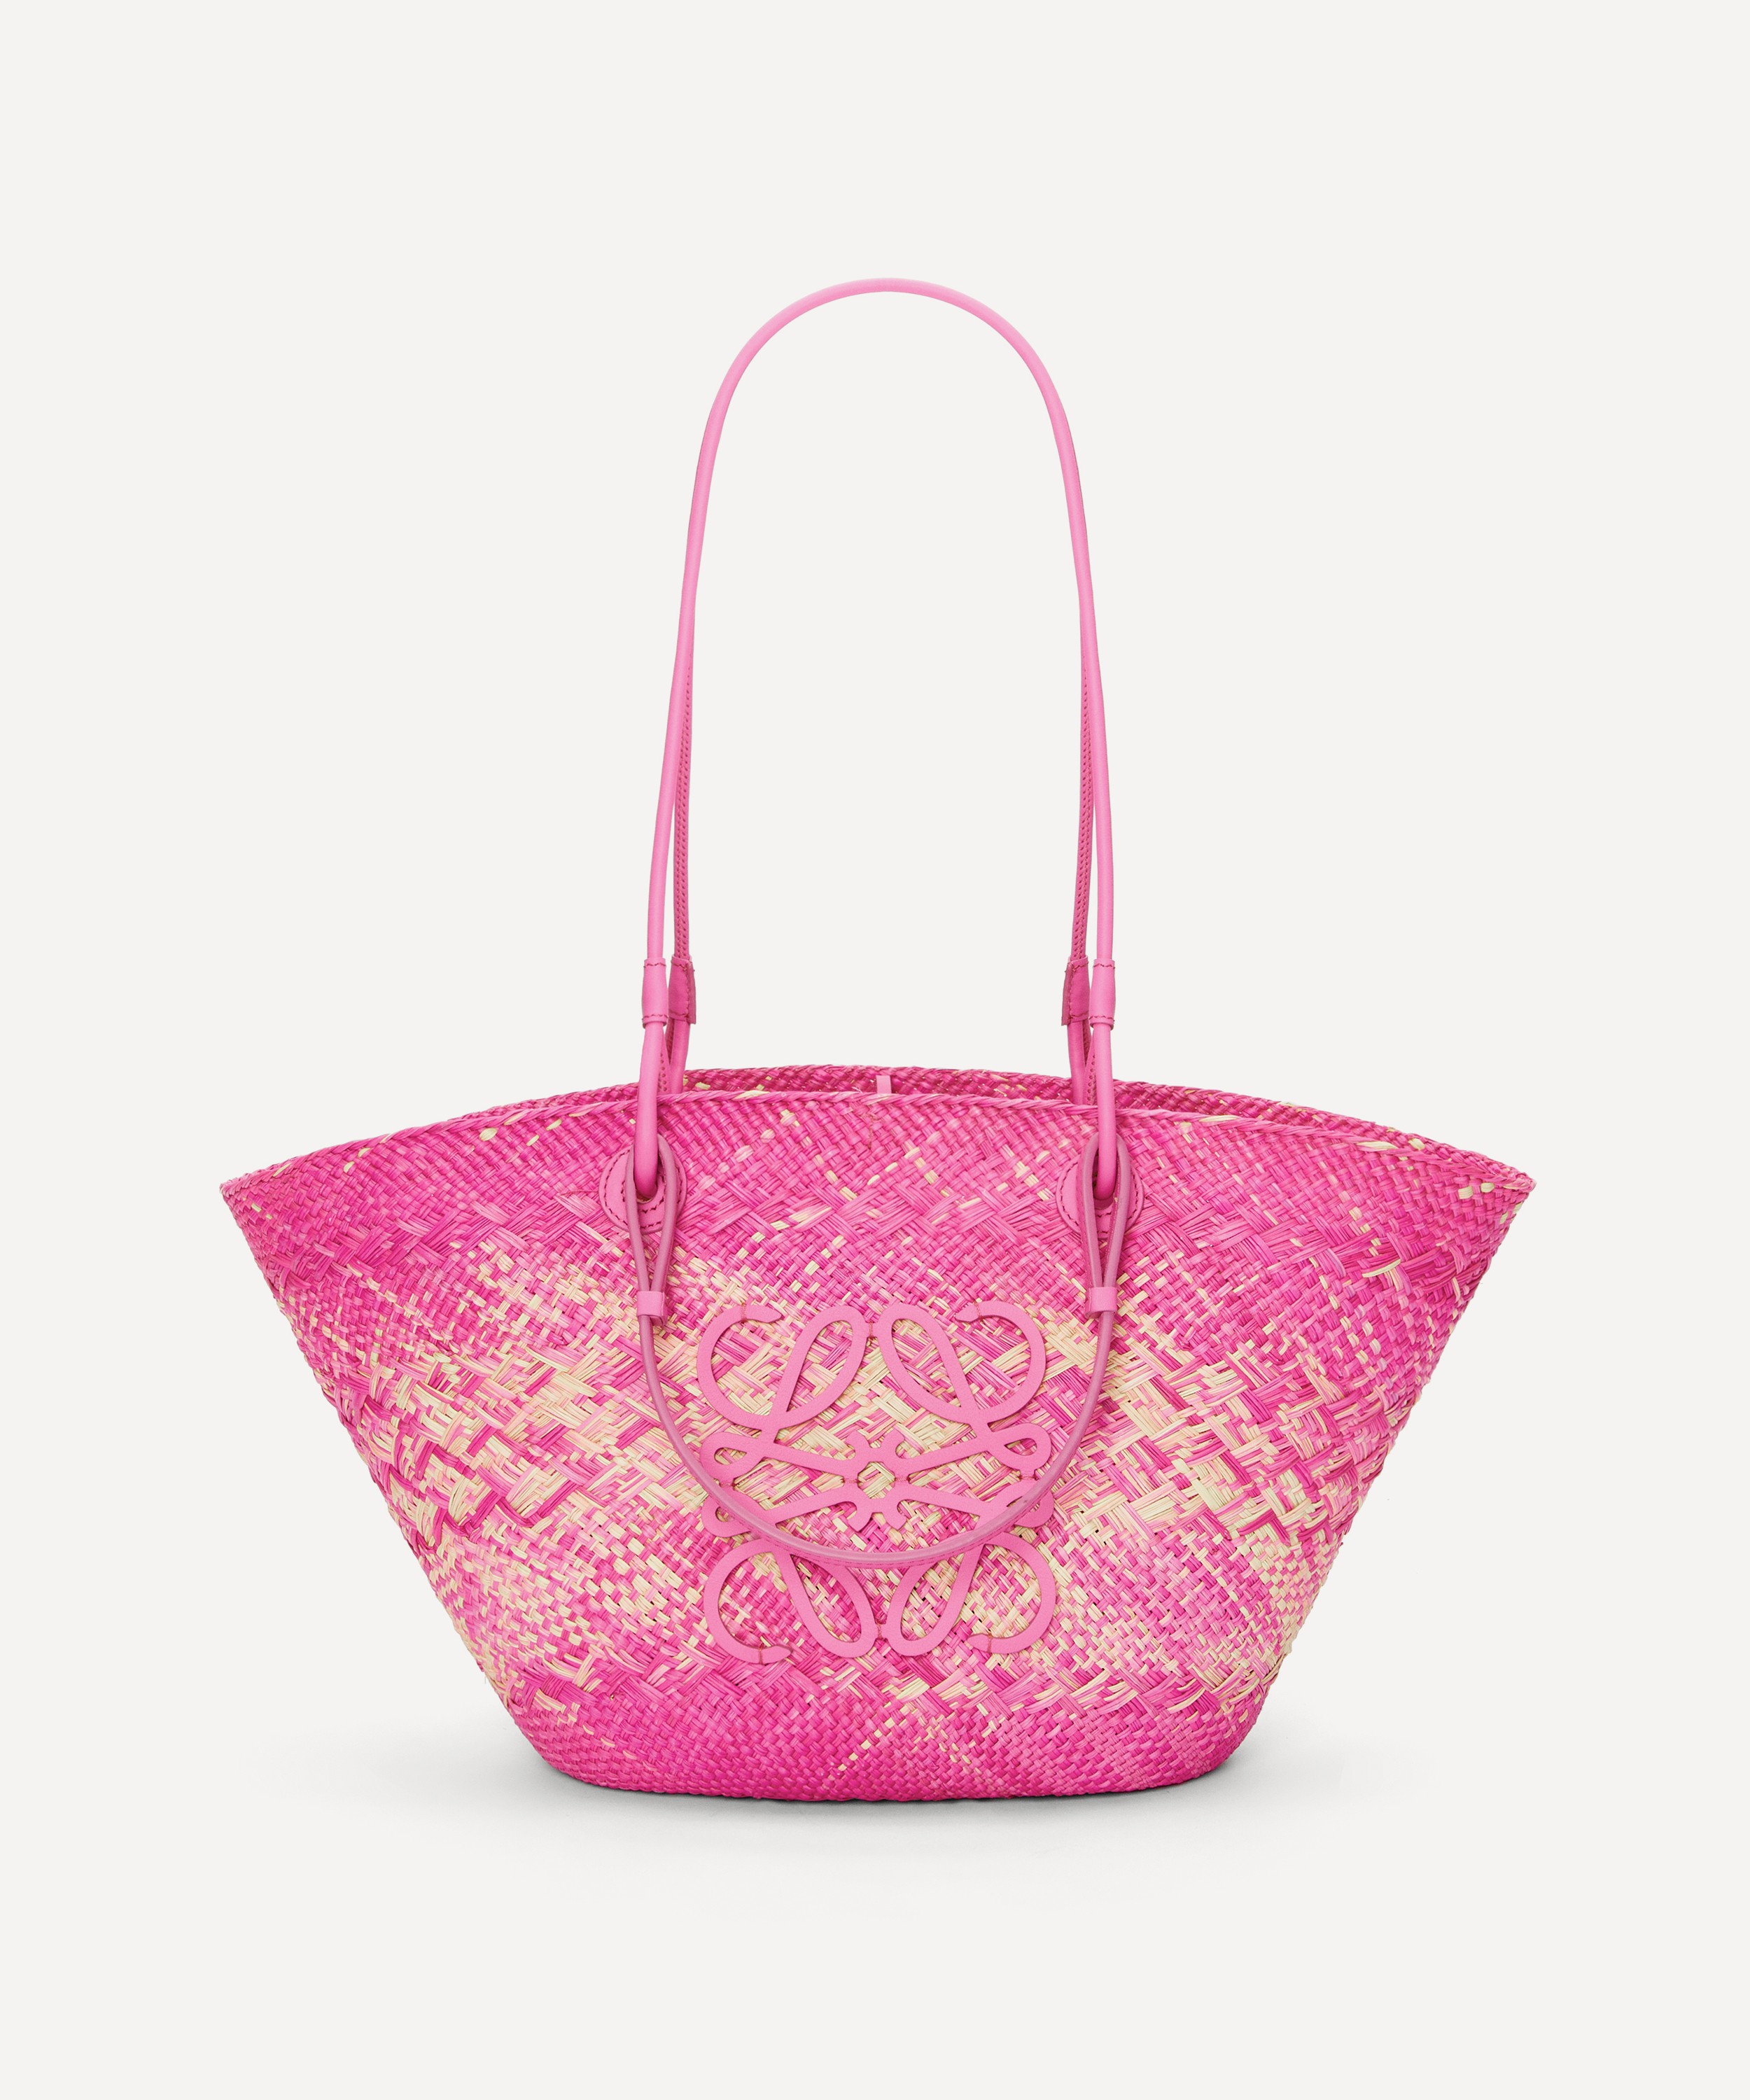 Victoria's Secret Bag For Unisex,Pink - Tote Bags price in UAE,  UAE